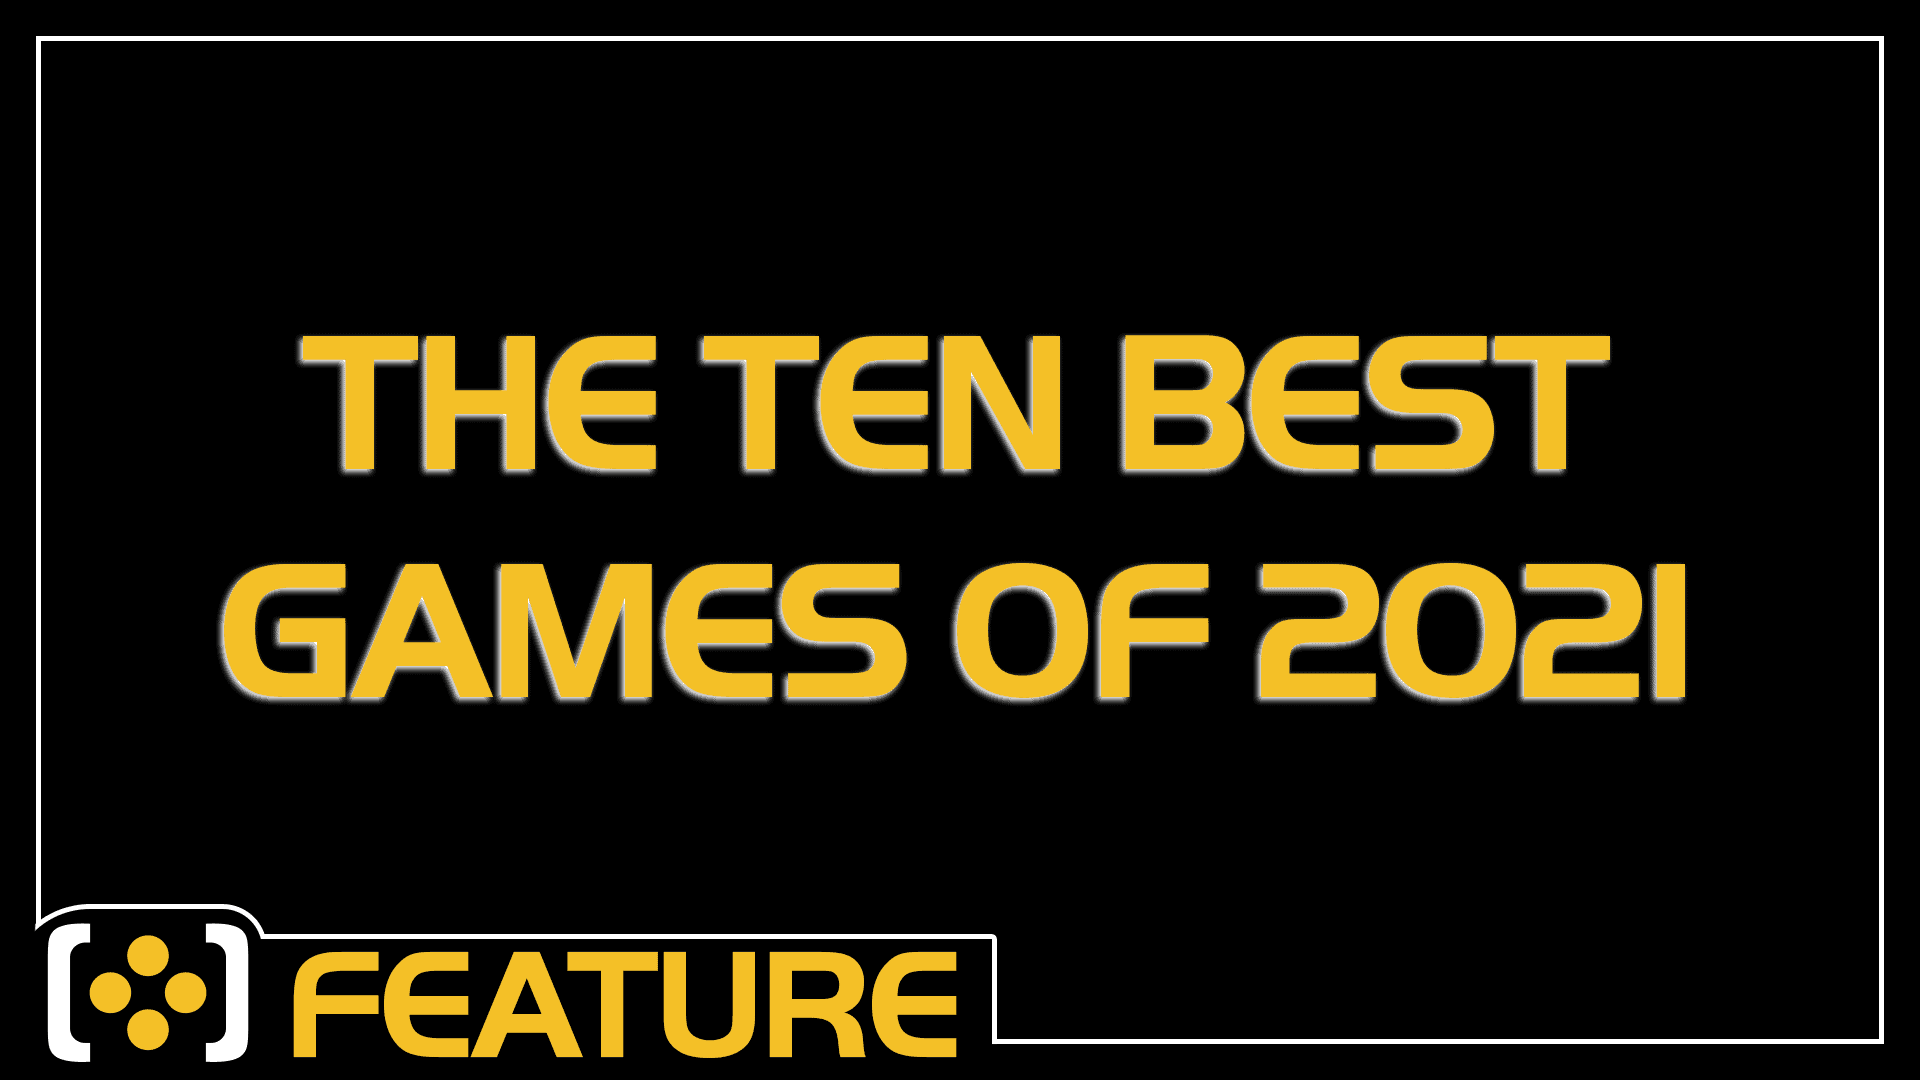 The Ten Best Games of 2021